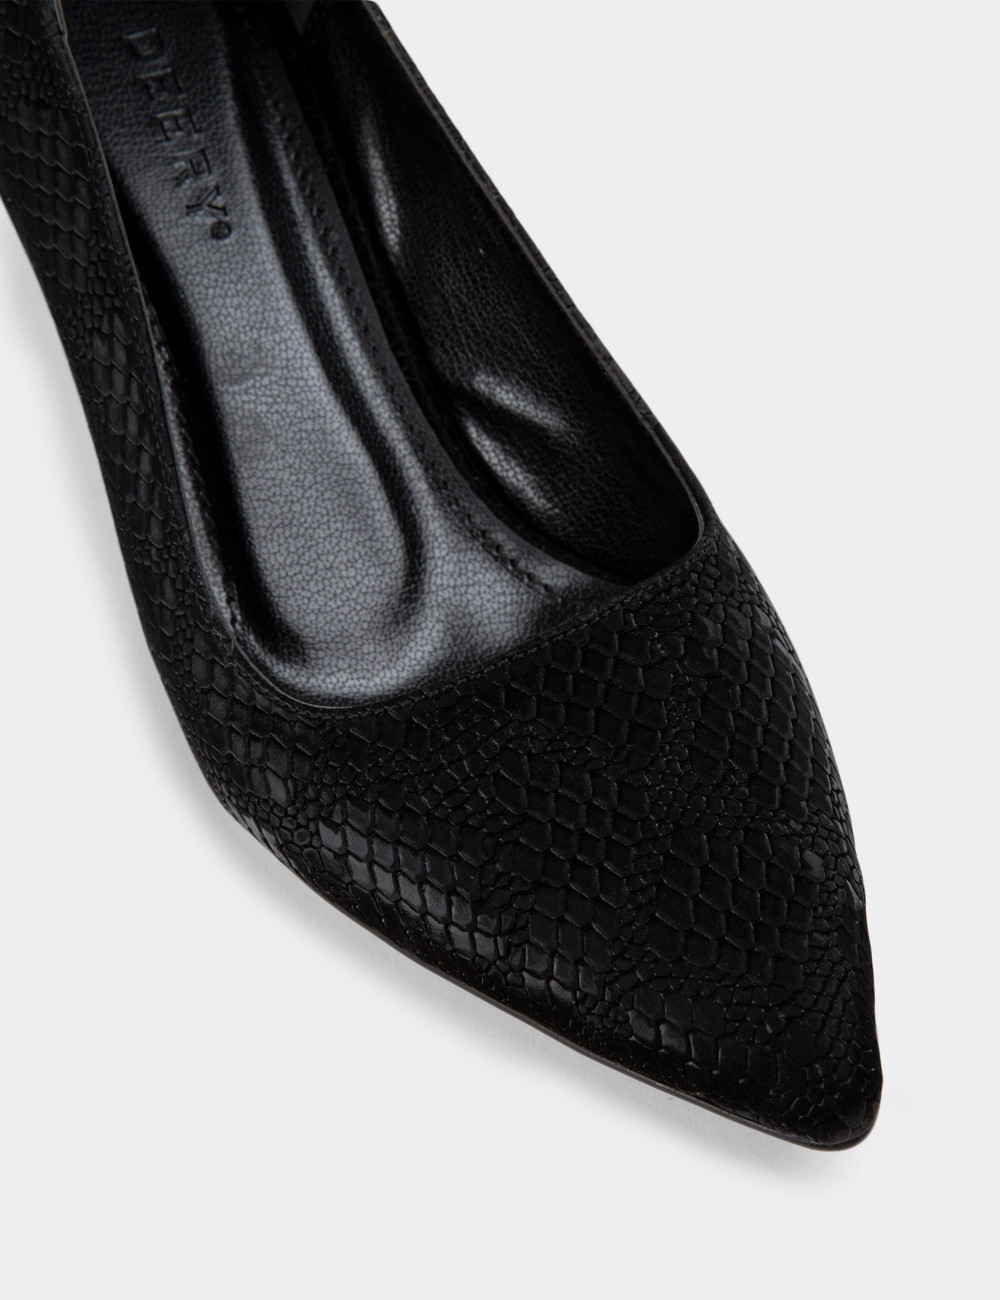 Siyah Stiletto Kadın Topuklu Ayakkabı - K0700ZSYHM01